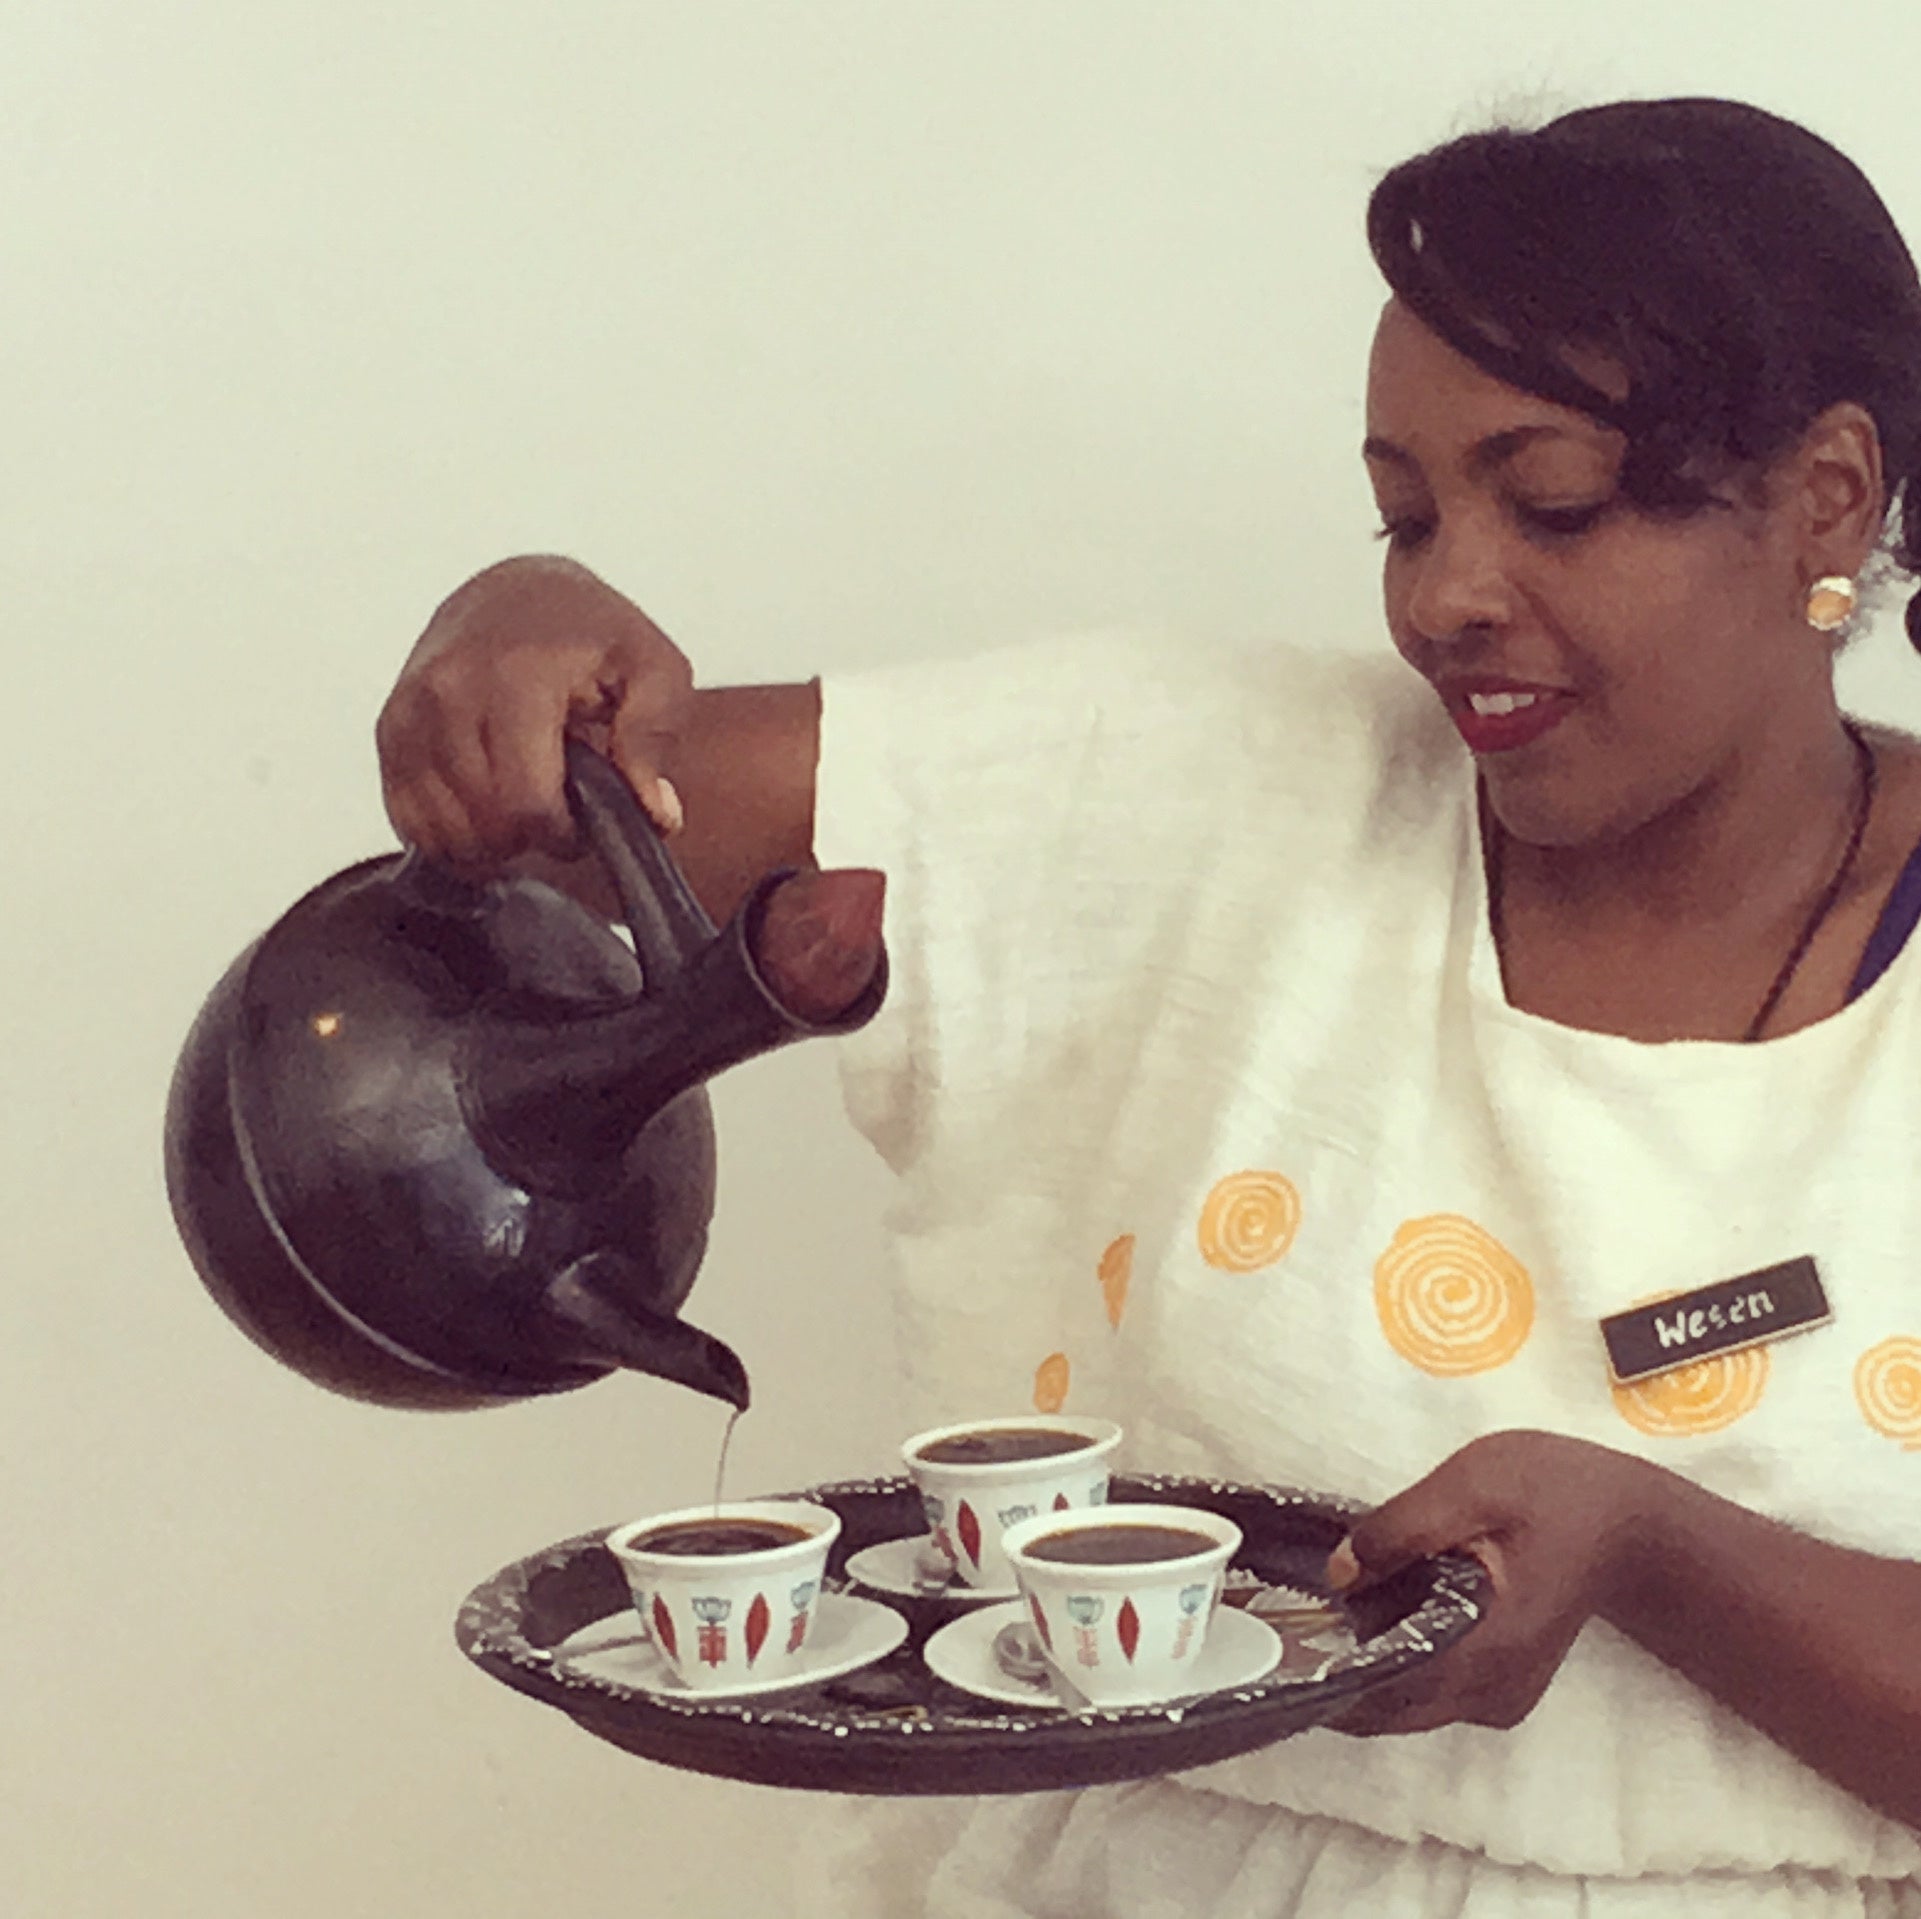 エチオピア式の「コーヒーセレモニー」に使われる『ジャバナ』と呼ばれる素焼きのコーヒーポットを使ったコーヒー提供